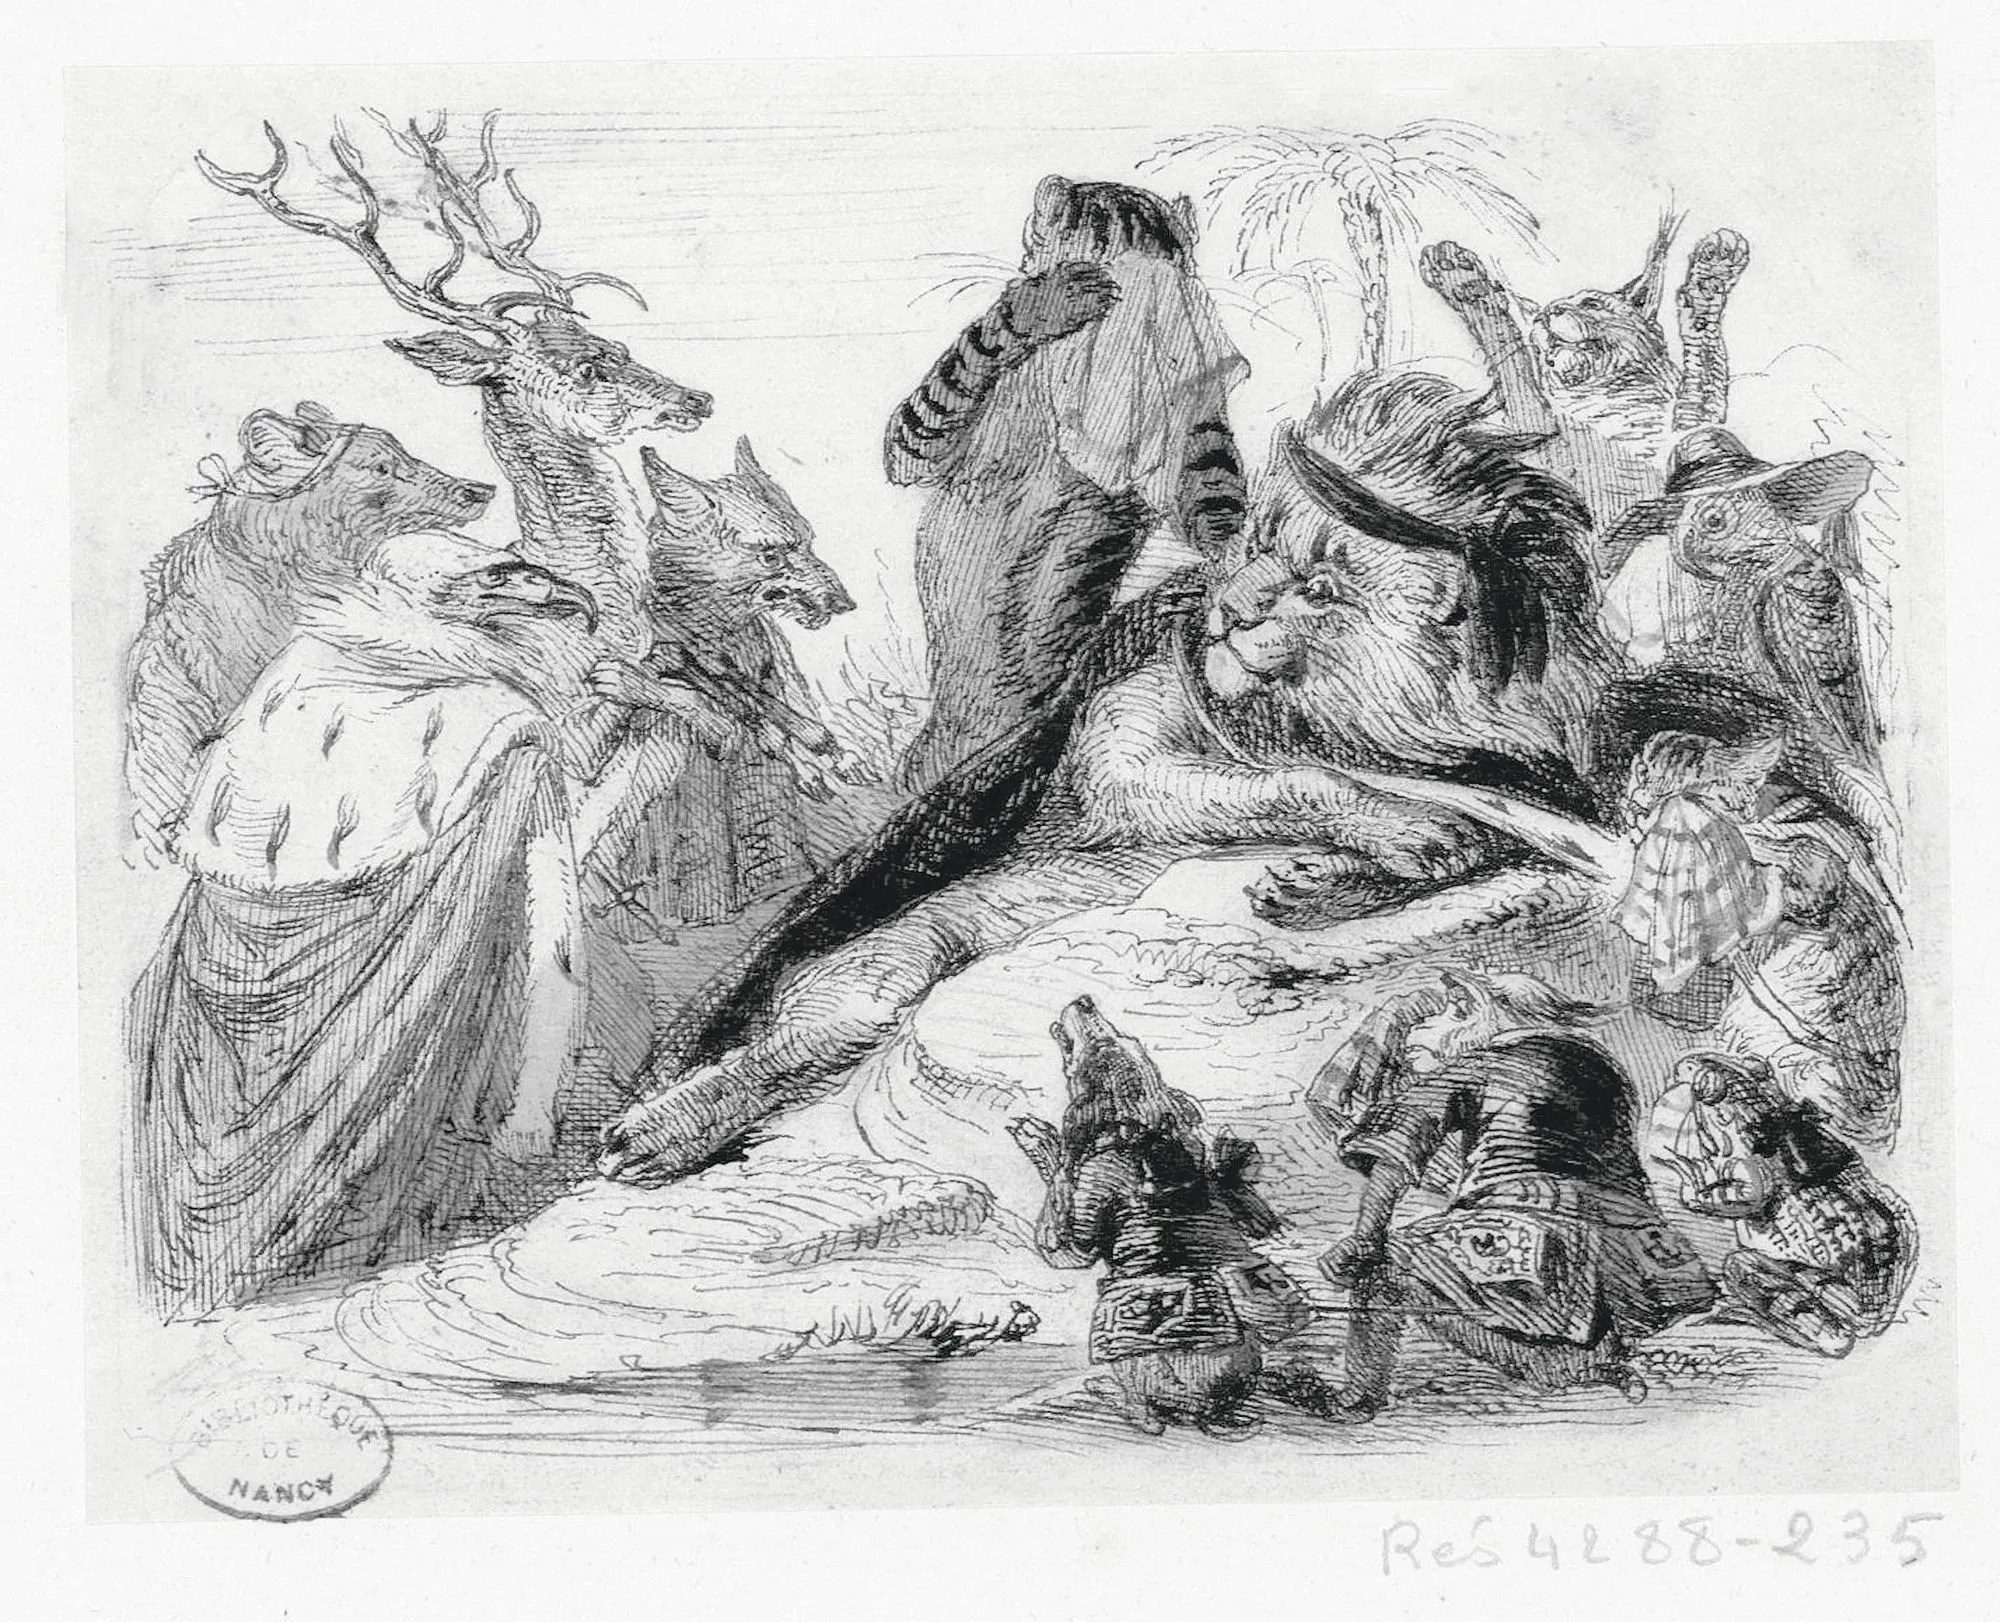 Jean-Jacques Grandville, Les Obsèques de la lionne, 1837 - 1838, gravure, Bibliothèque municipale de Nancy.